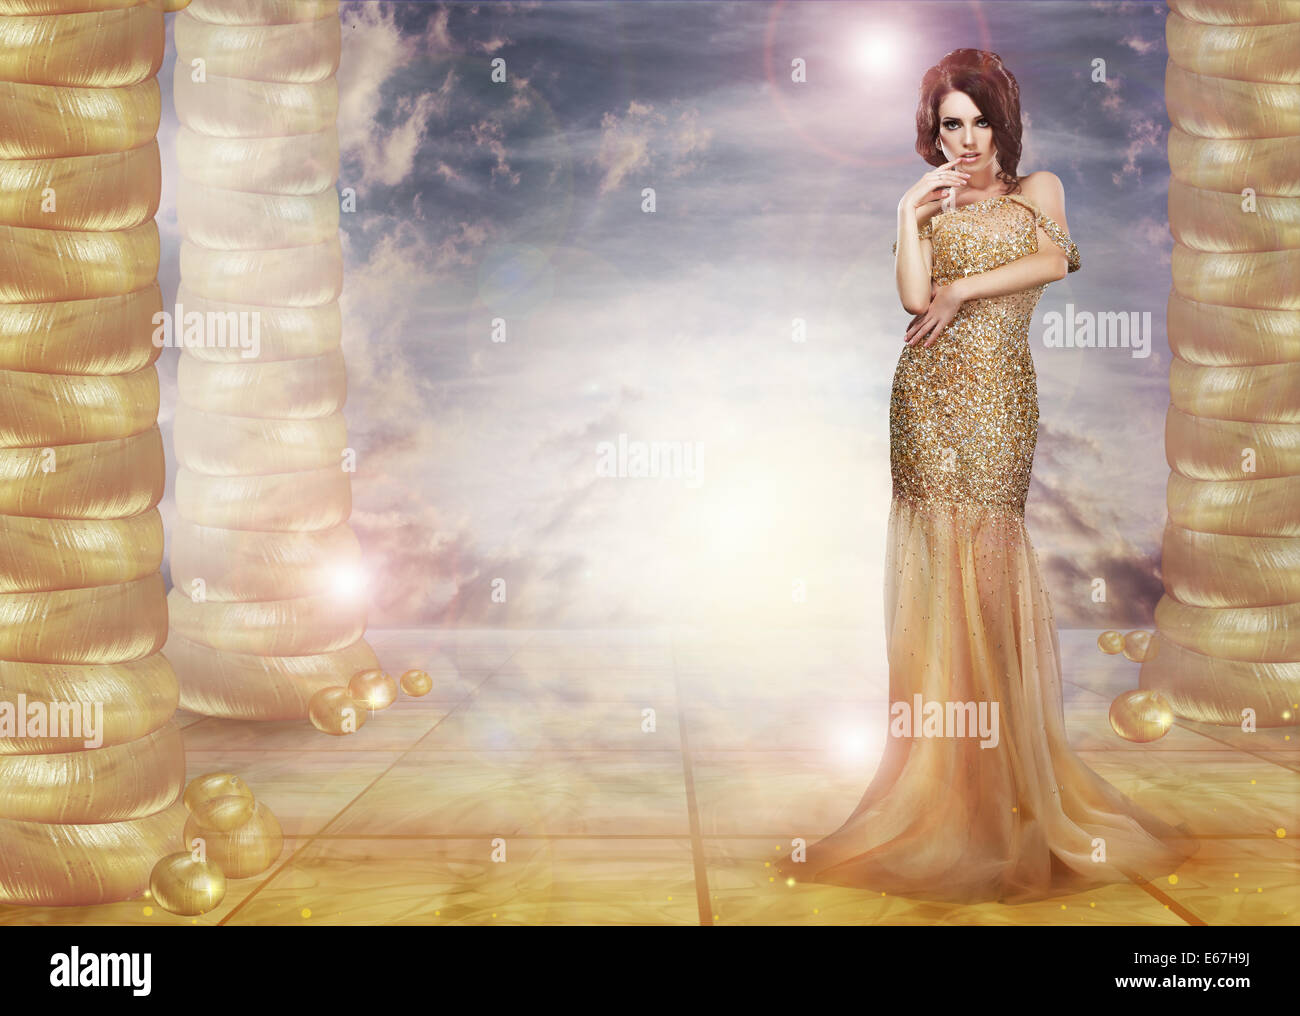 Fantasie. Glam. Verführerische Lady in stilvollen Kleid über abstrakten Hintergrund Stockfoto